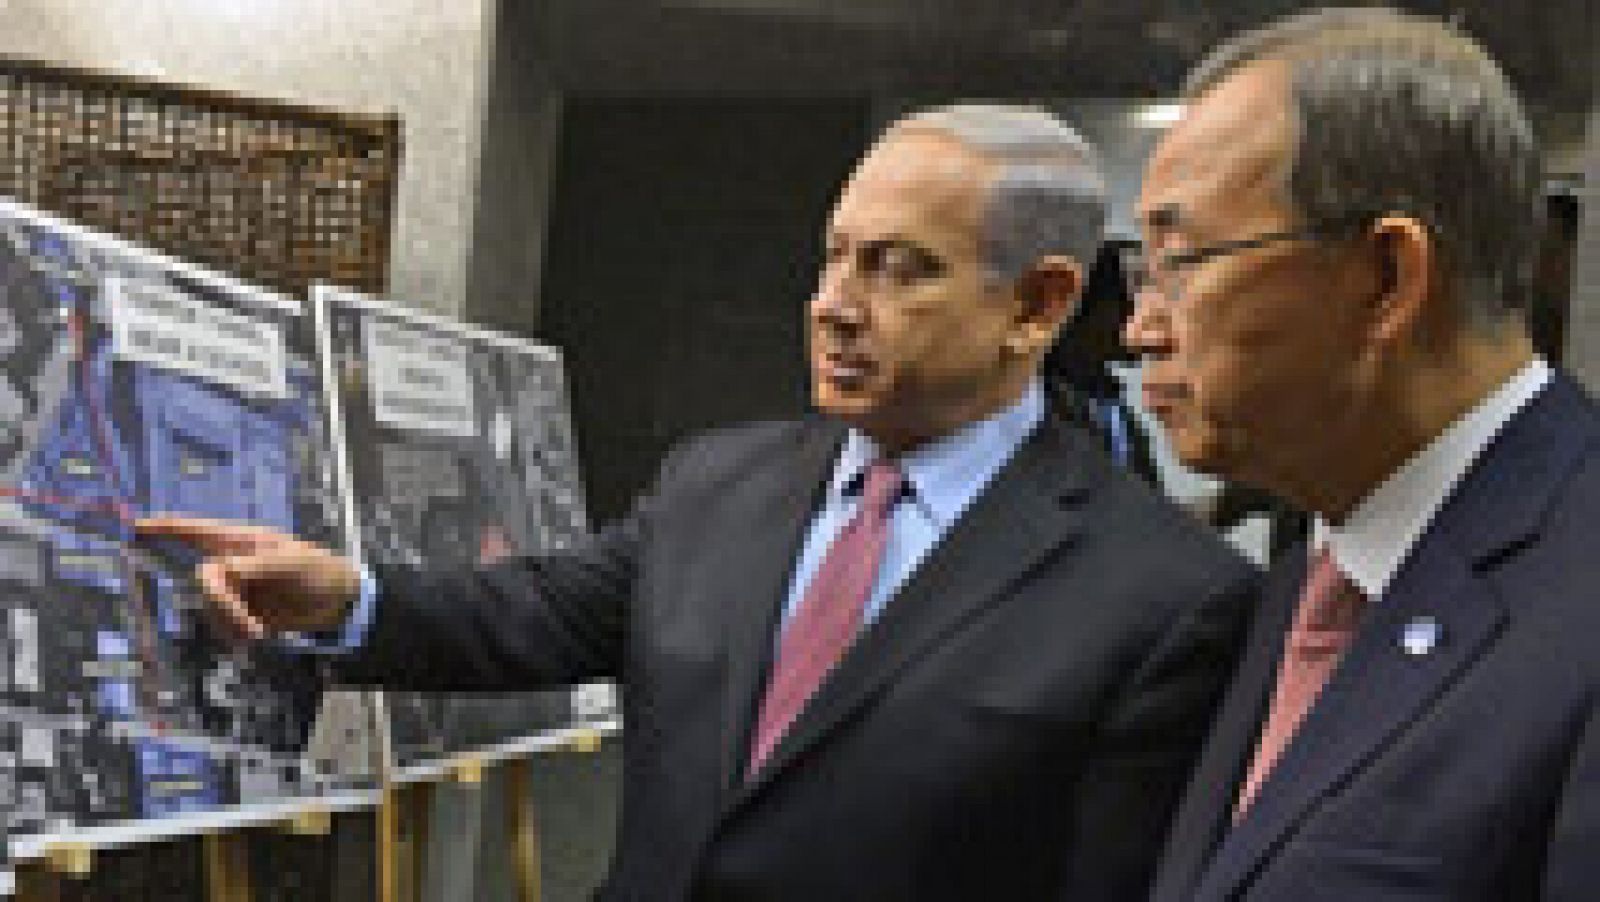 El secretario general de la ONU, Ban Ki-moon, ha instado al cese de la violencia en Gaza y en Israel y al regreso al diálogo para resolver los problemas, aunque se mostró incapaz de decir cuando se declarará un alto el fuego. "Estamos trabajando duro pero soy incapaz de predecir cuando habrá resultados", dijo Ban en Ramala en una conferencia de prensa con el primer ministro palestino, Rami Hamdala. Ban, como había hecho dos horas antes en Tel Aviv junto al primer ministro israelí, Benjamín Netanyahu, agregó que las partes deben trabajar para "atajar las raíces del conflicto", en alusión a que no será suficiente un alto el fuego en Gaza sino la búsqueda de una solución al conflicto palestino-israelí en general, porque esta crisis es "una repetición".
